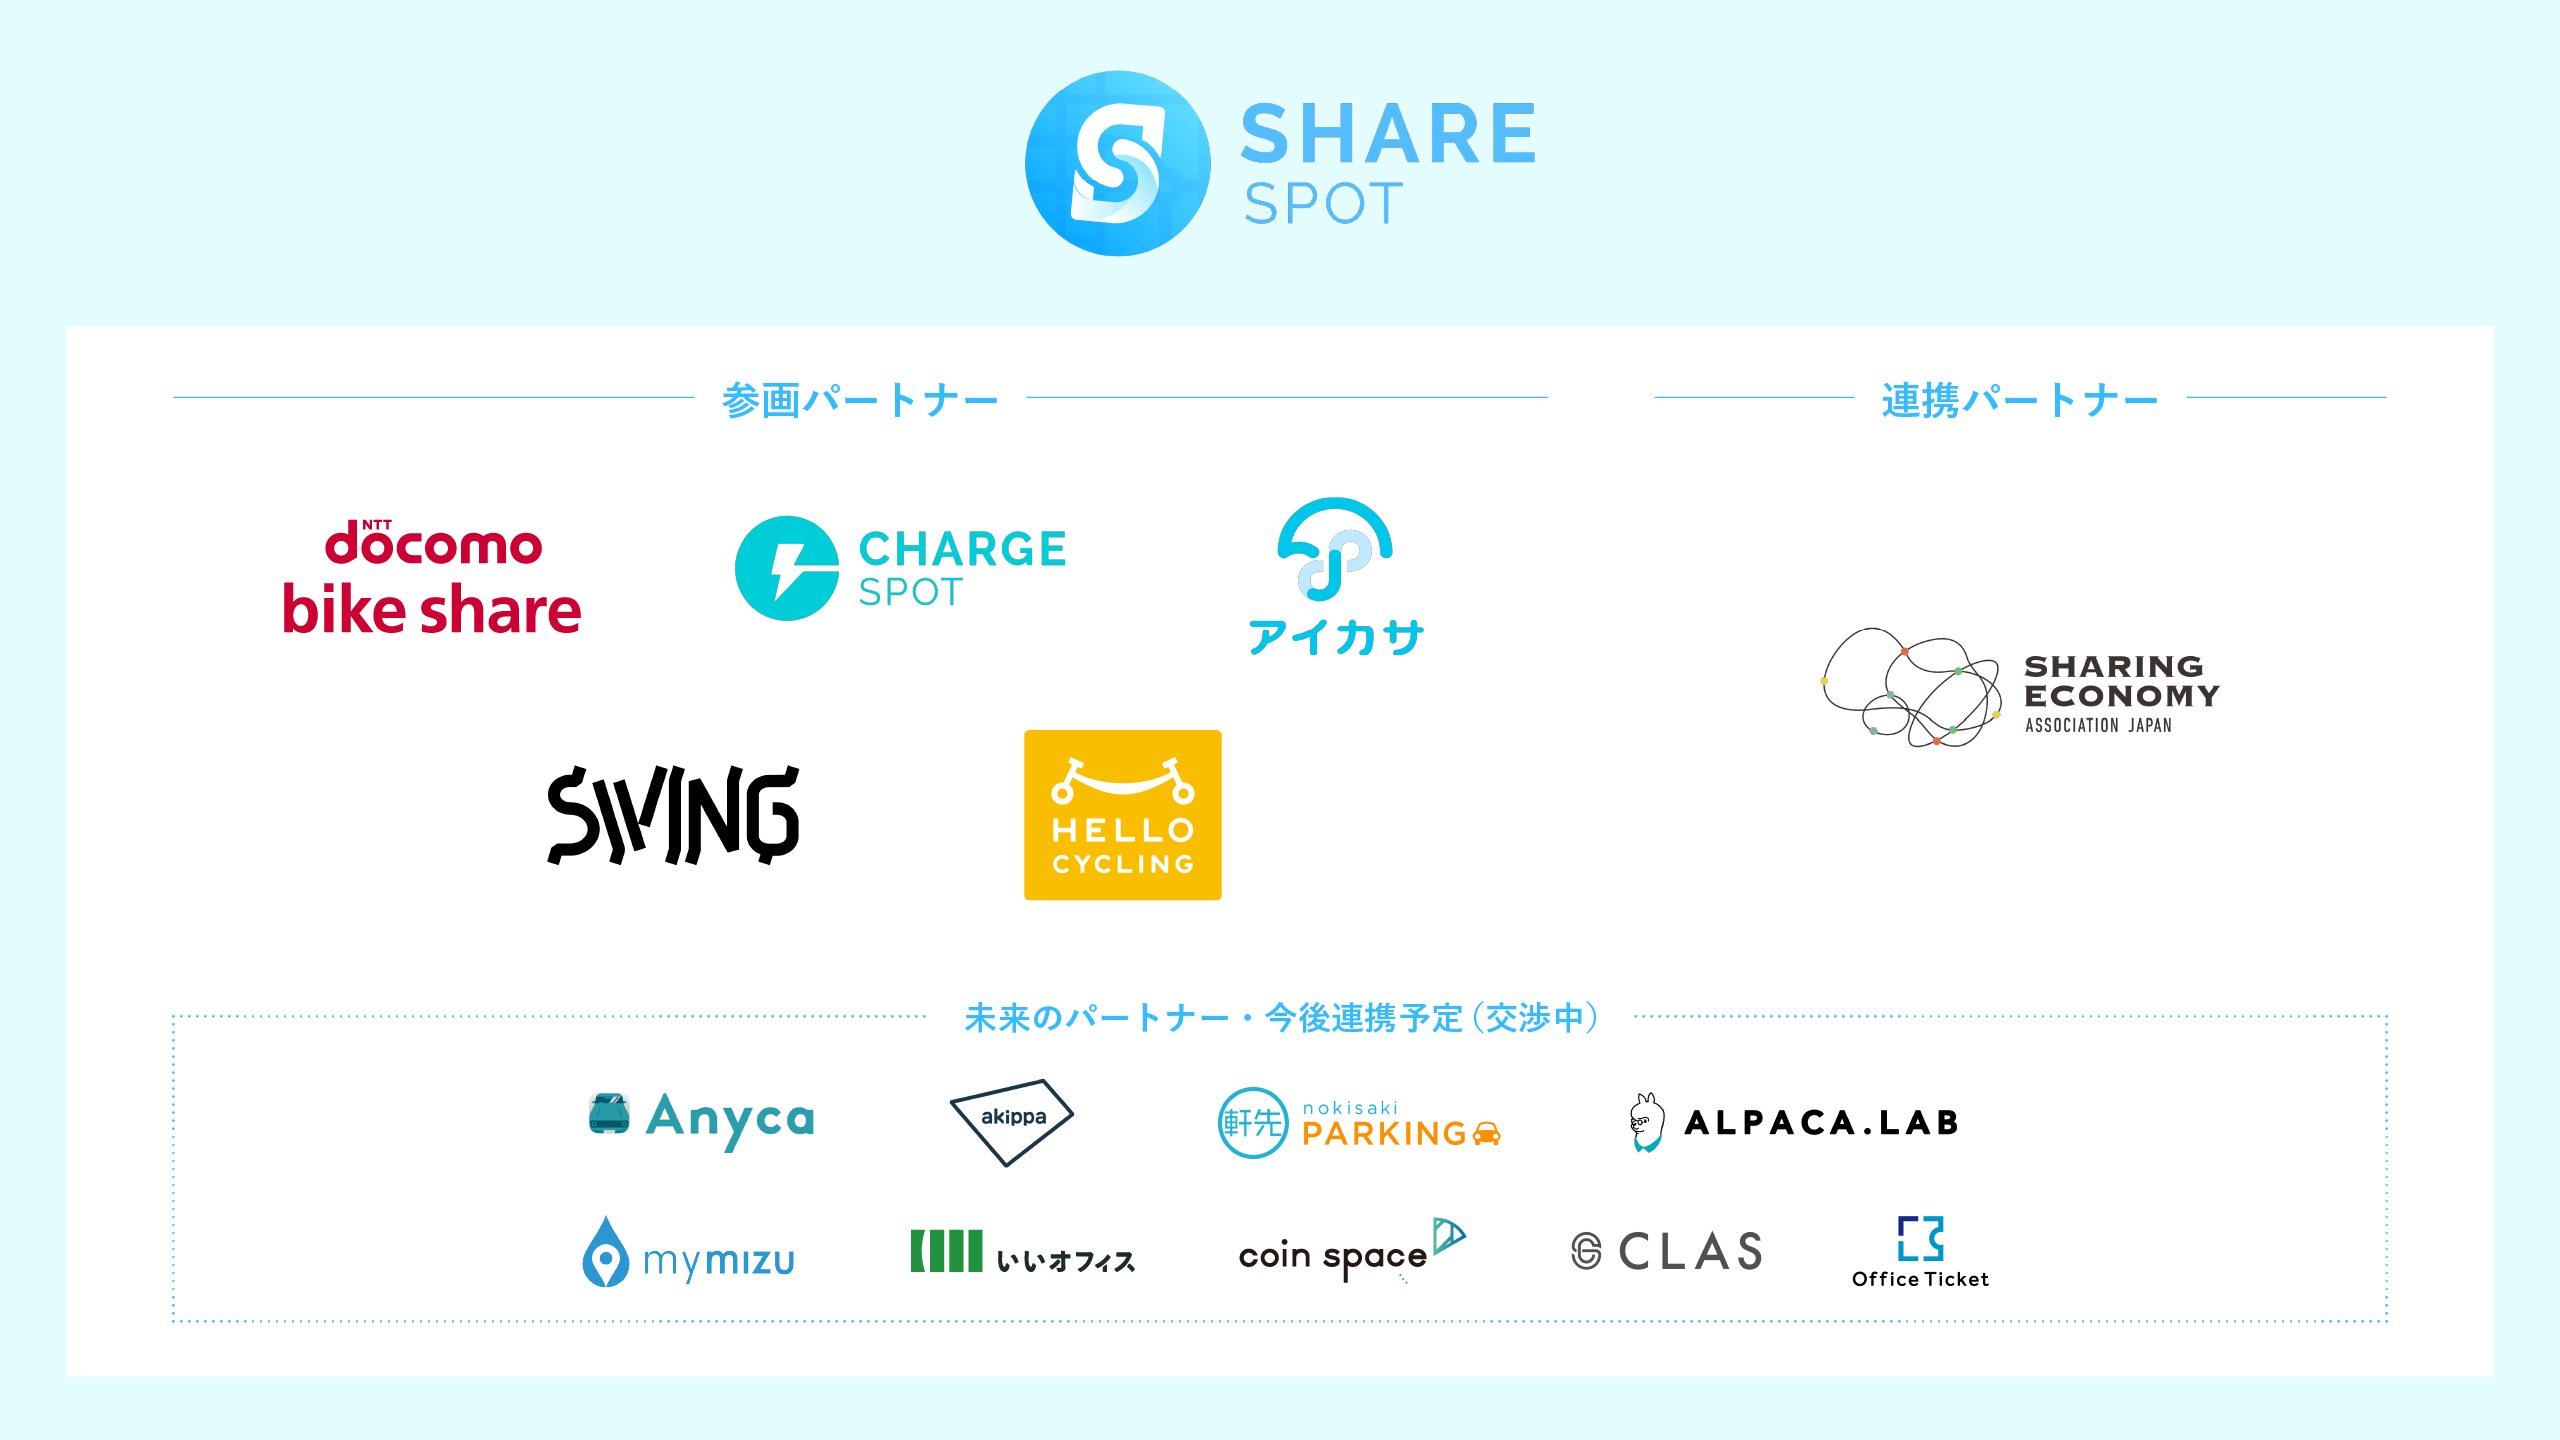 【Press Release】シェアサービス複数社が連携！移動のシェアからモノのシェアまで1つのアプリで利用できる「ShareSPOT」を発表。